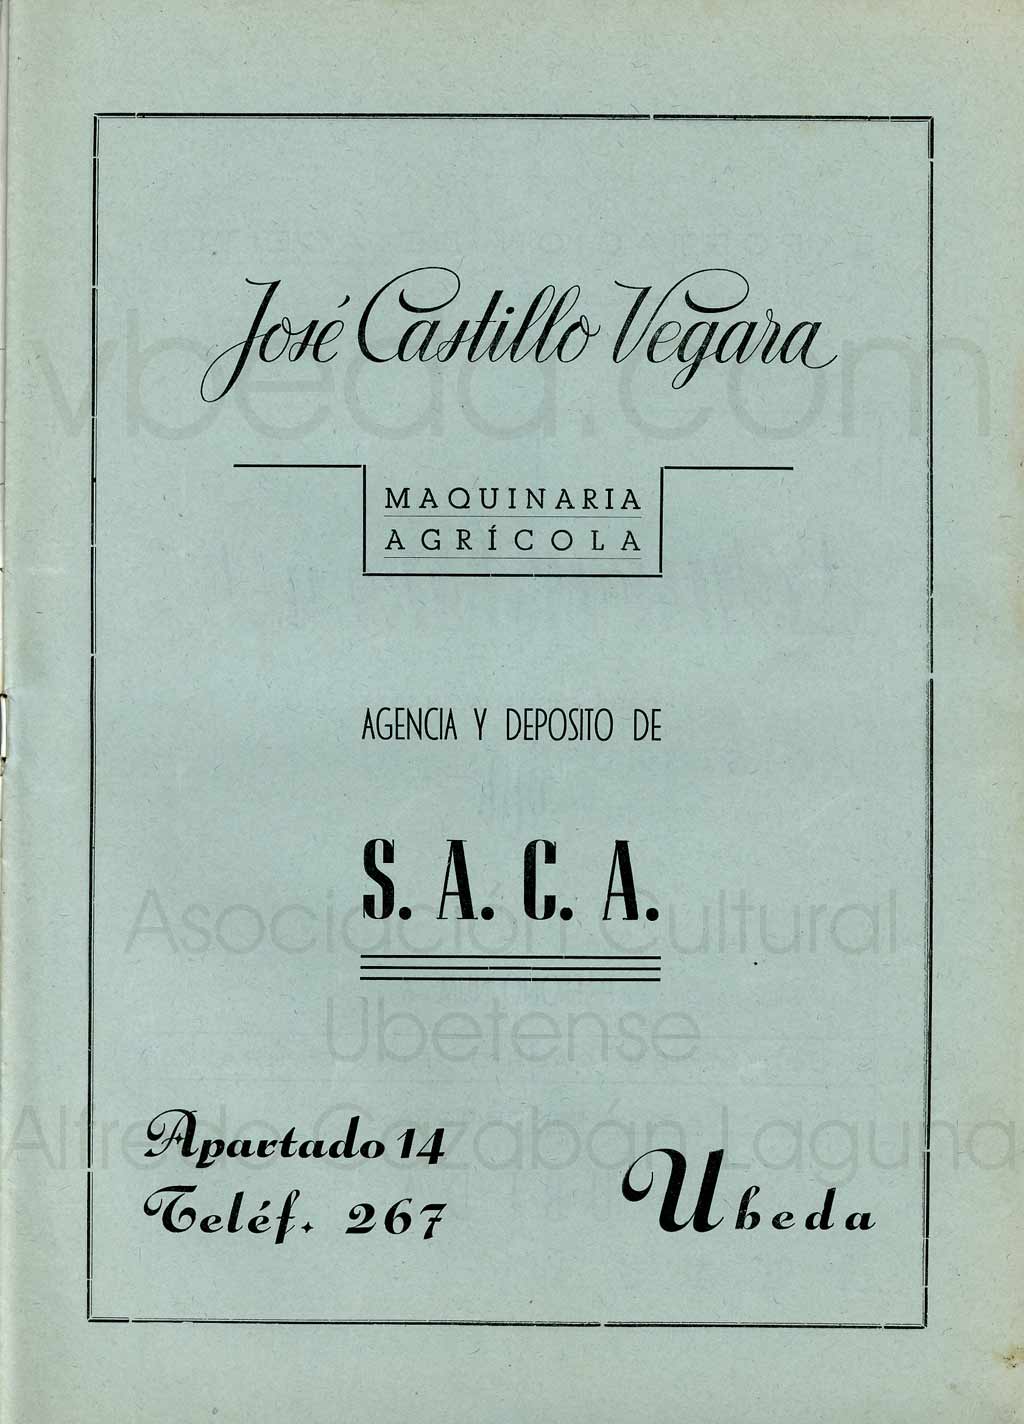 Revista Vbeda. Ao 1. N 1 de enero de 1950